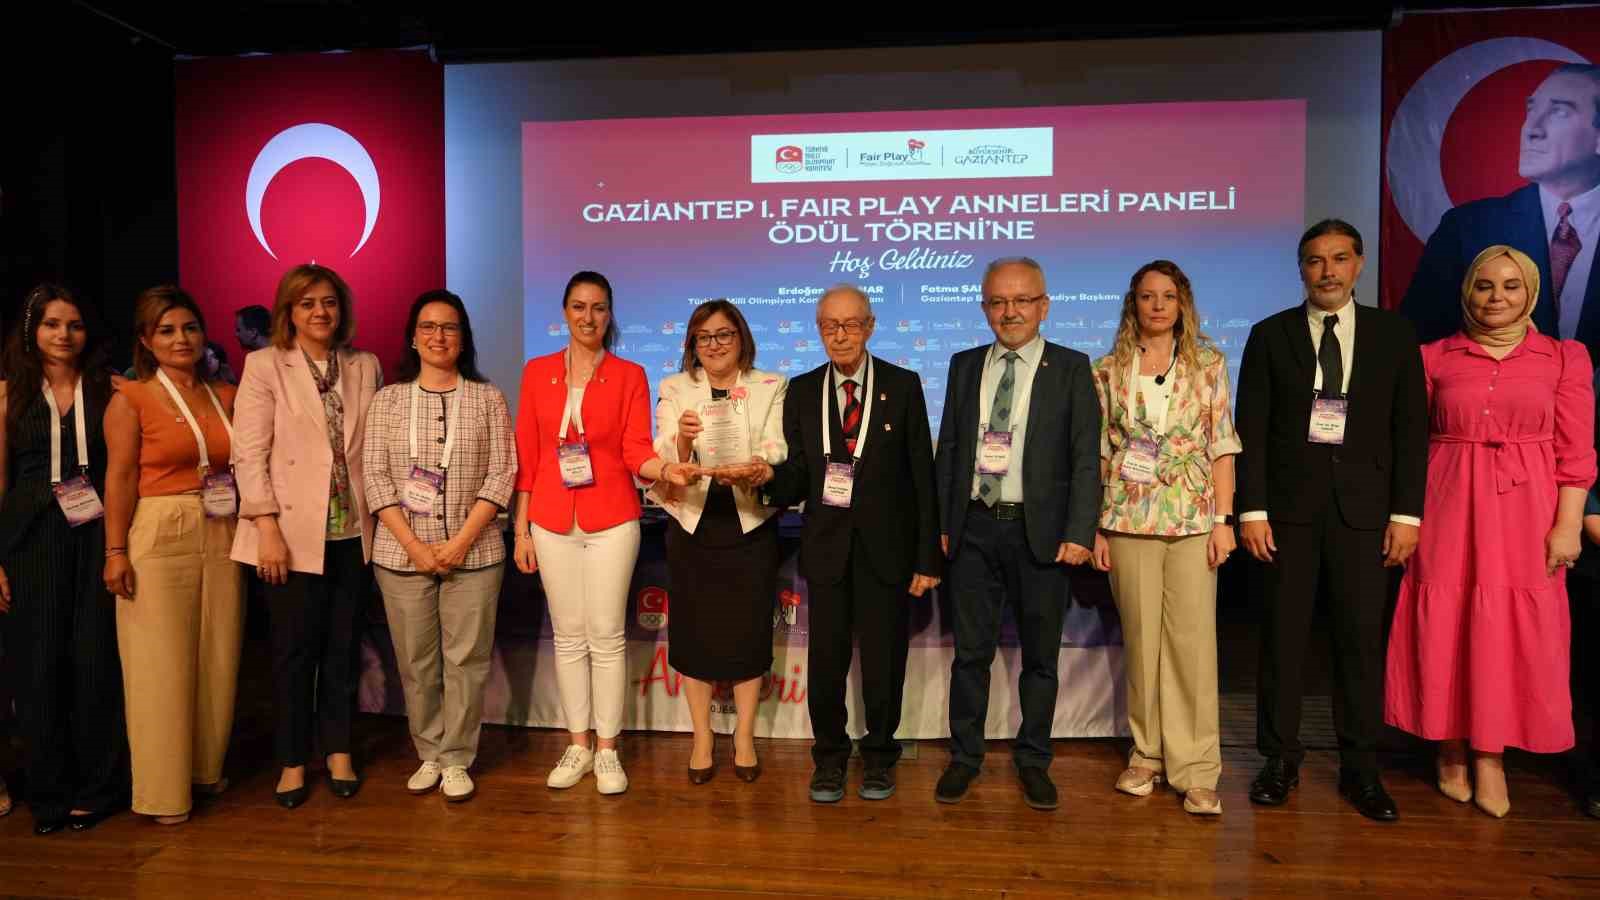 Milli Olimpiyat Komitesi, Fatma Şahin’i Türkiye’nin ilk “Fair Play Annesi” seçti
